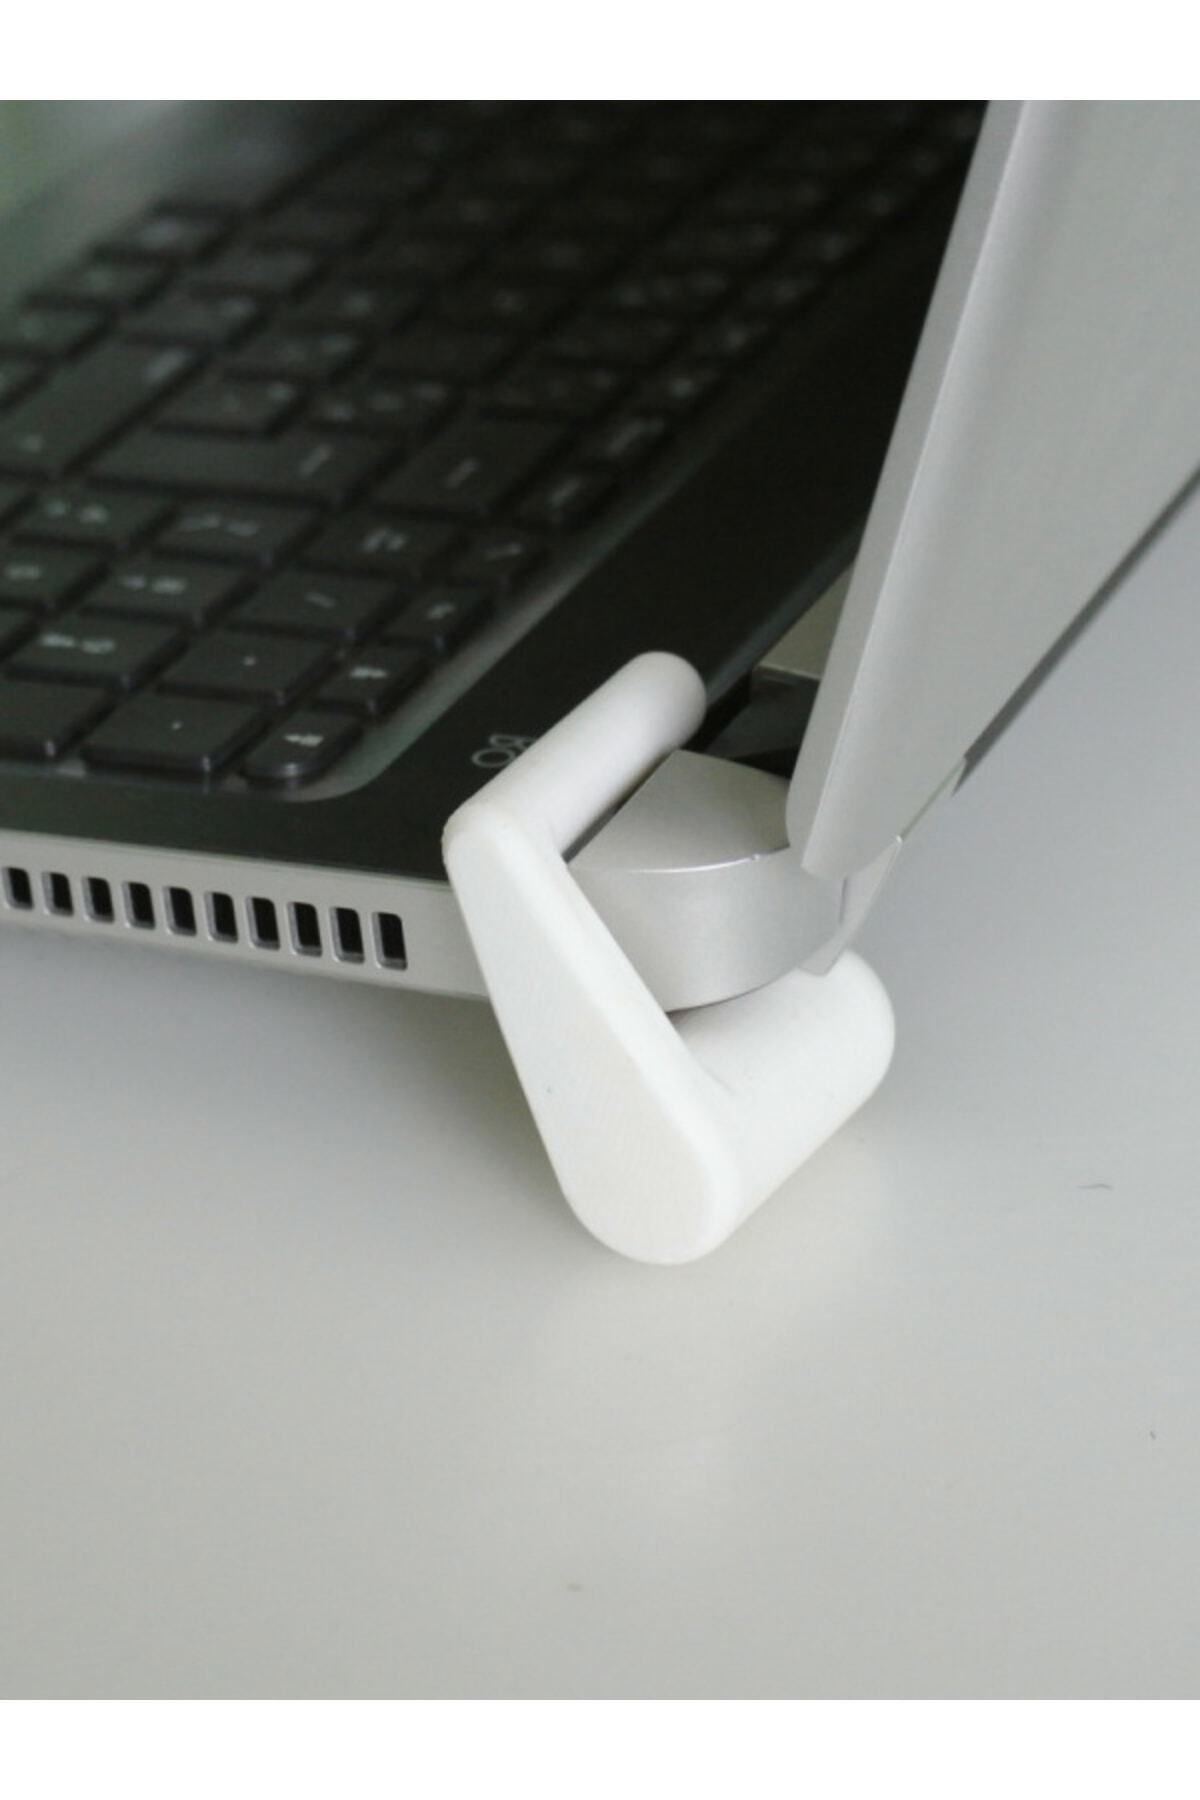 3Dshopping Laptop Standı / Tutacağı / Soğutucu